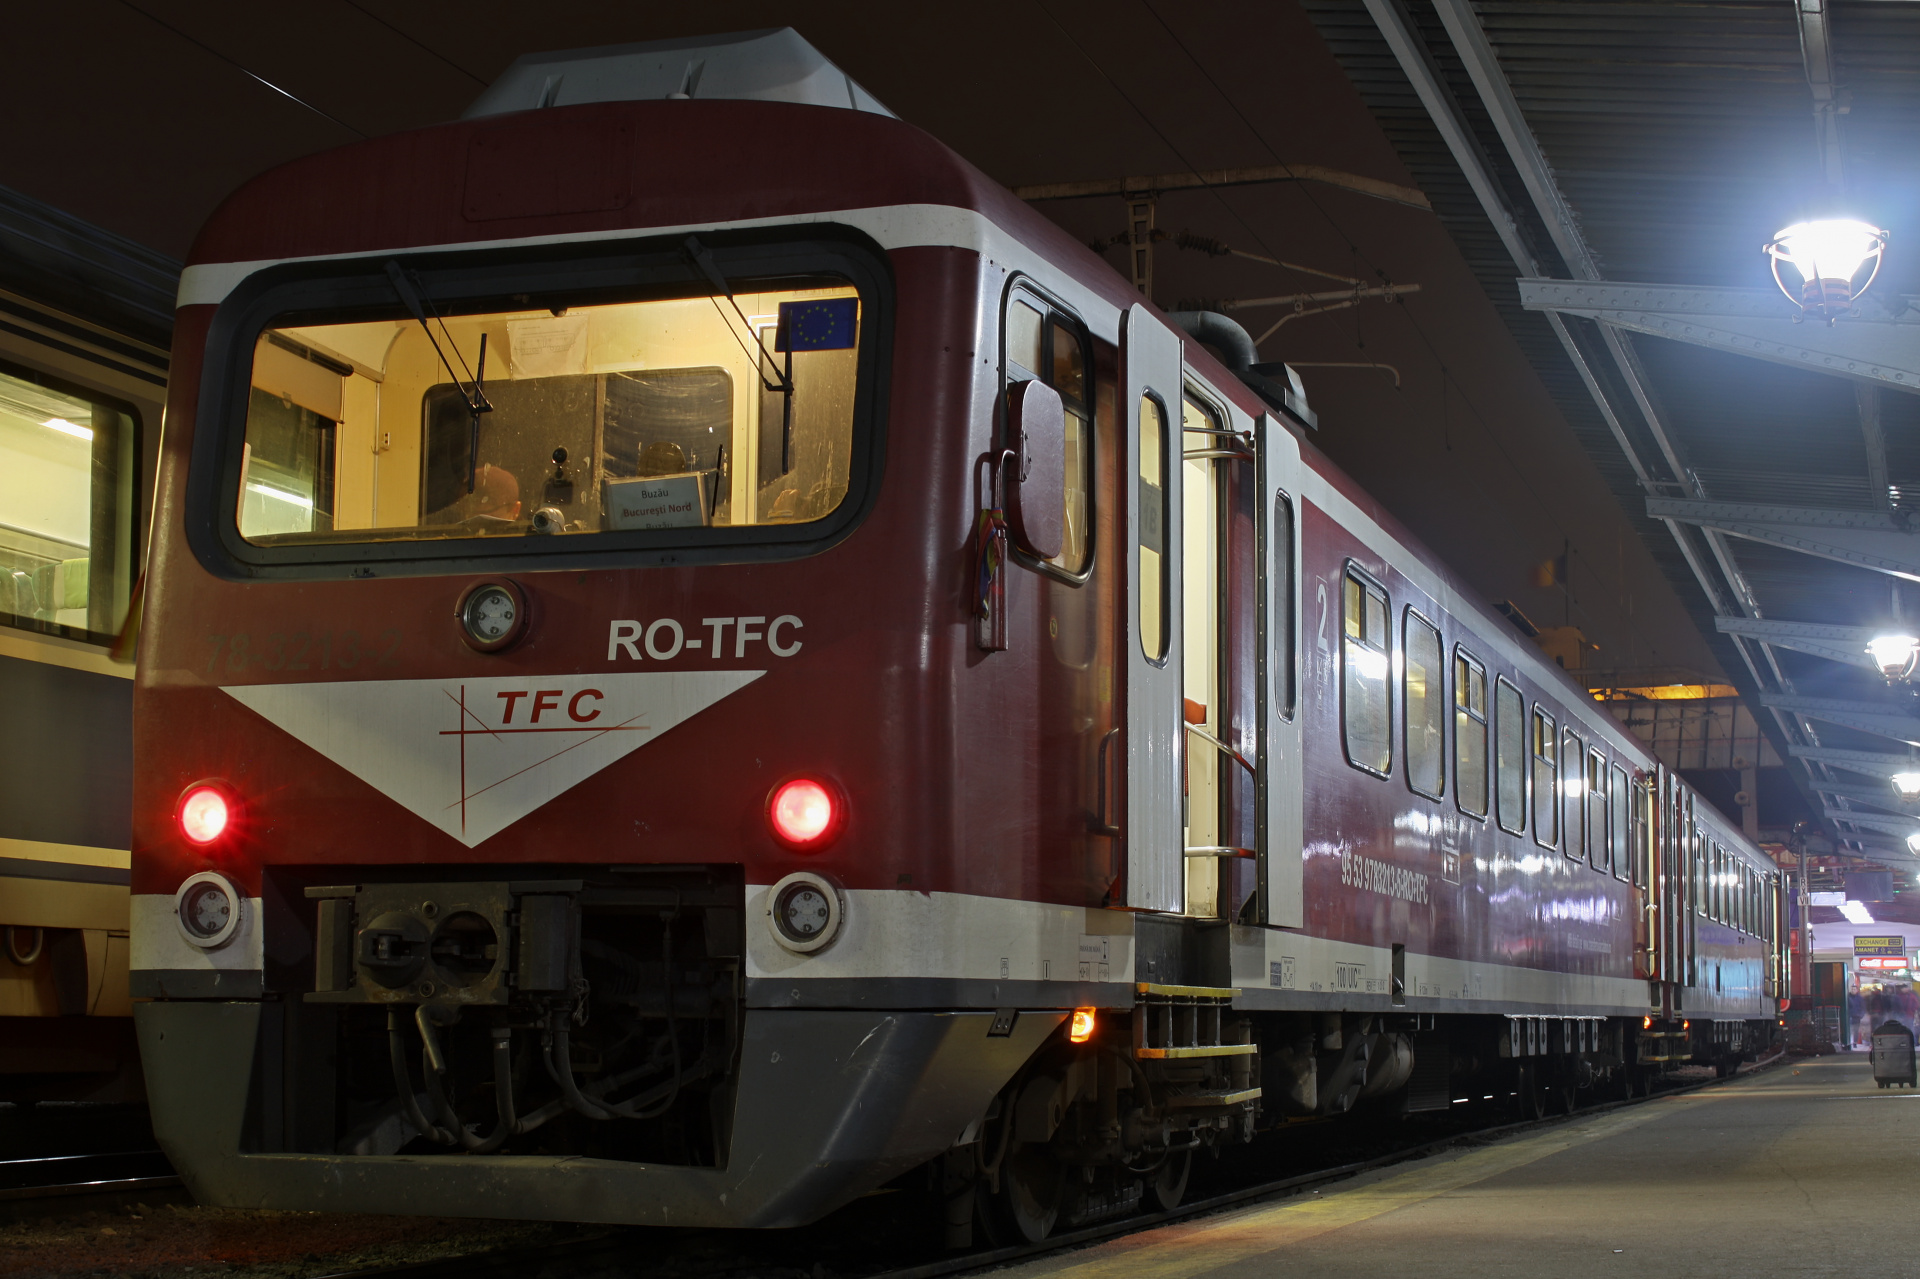 Düwag Wadloper DH2 (Podróże » Bukareszt » Pociągi i lokomotywy)